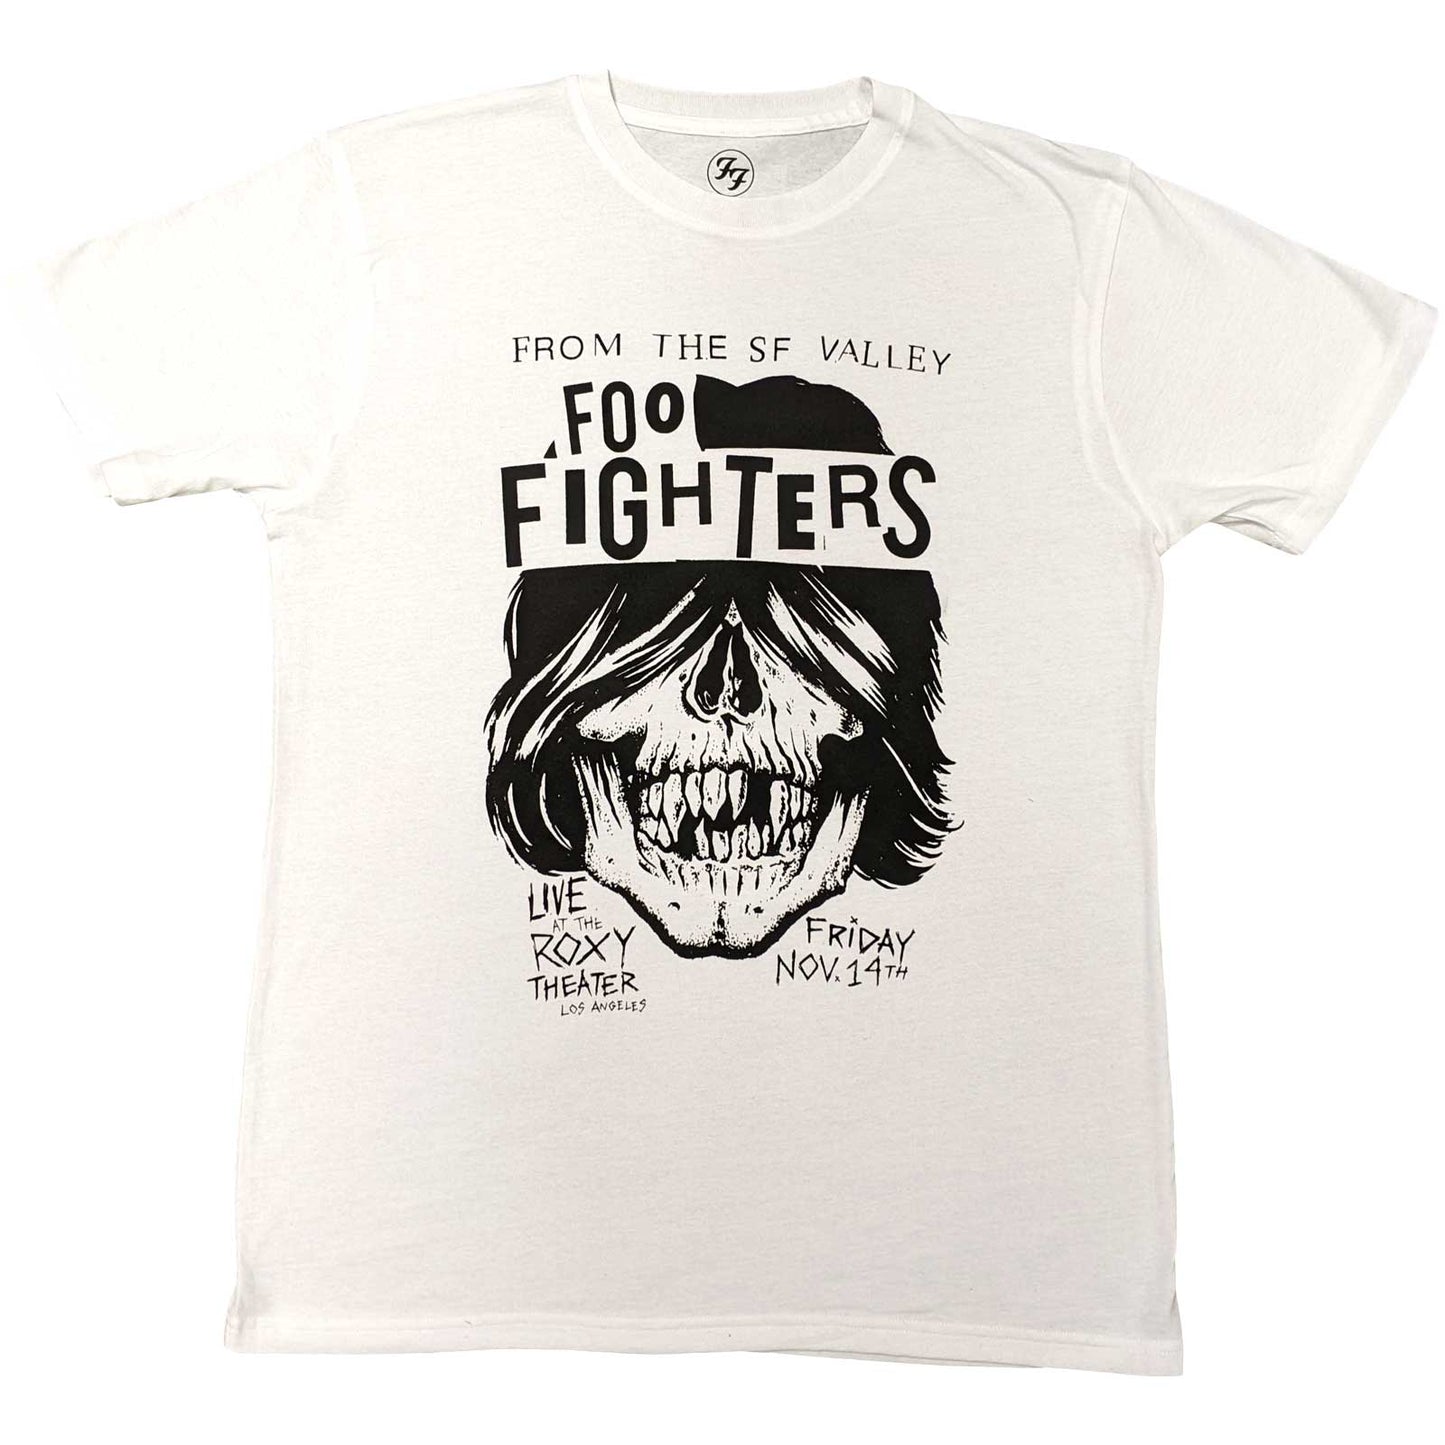 Foo Fighters T-Shirt: Roxy Flyer